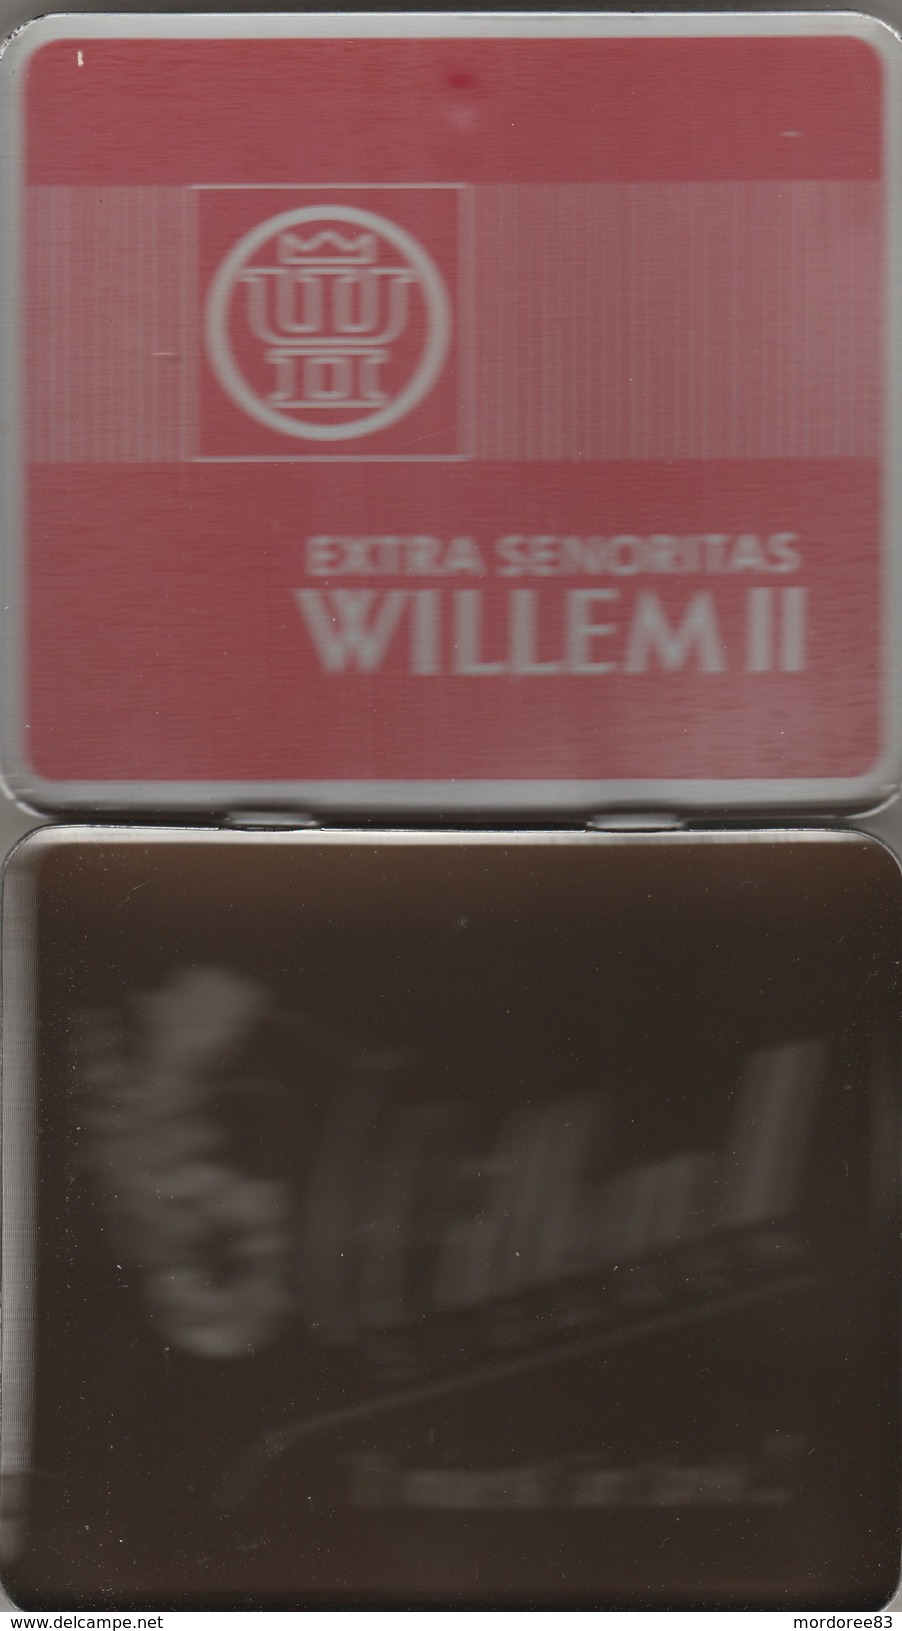 BOITE EN FER 20 EXTRA SENORITAS WILLEM II - Zigarrenetuis